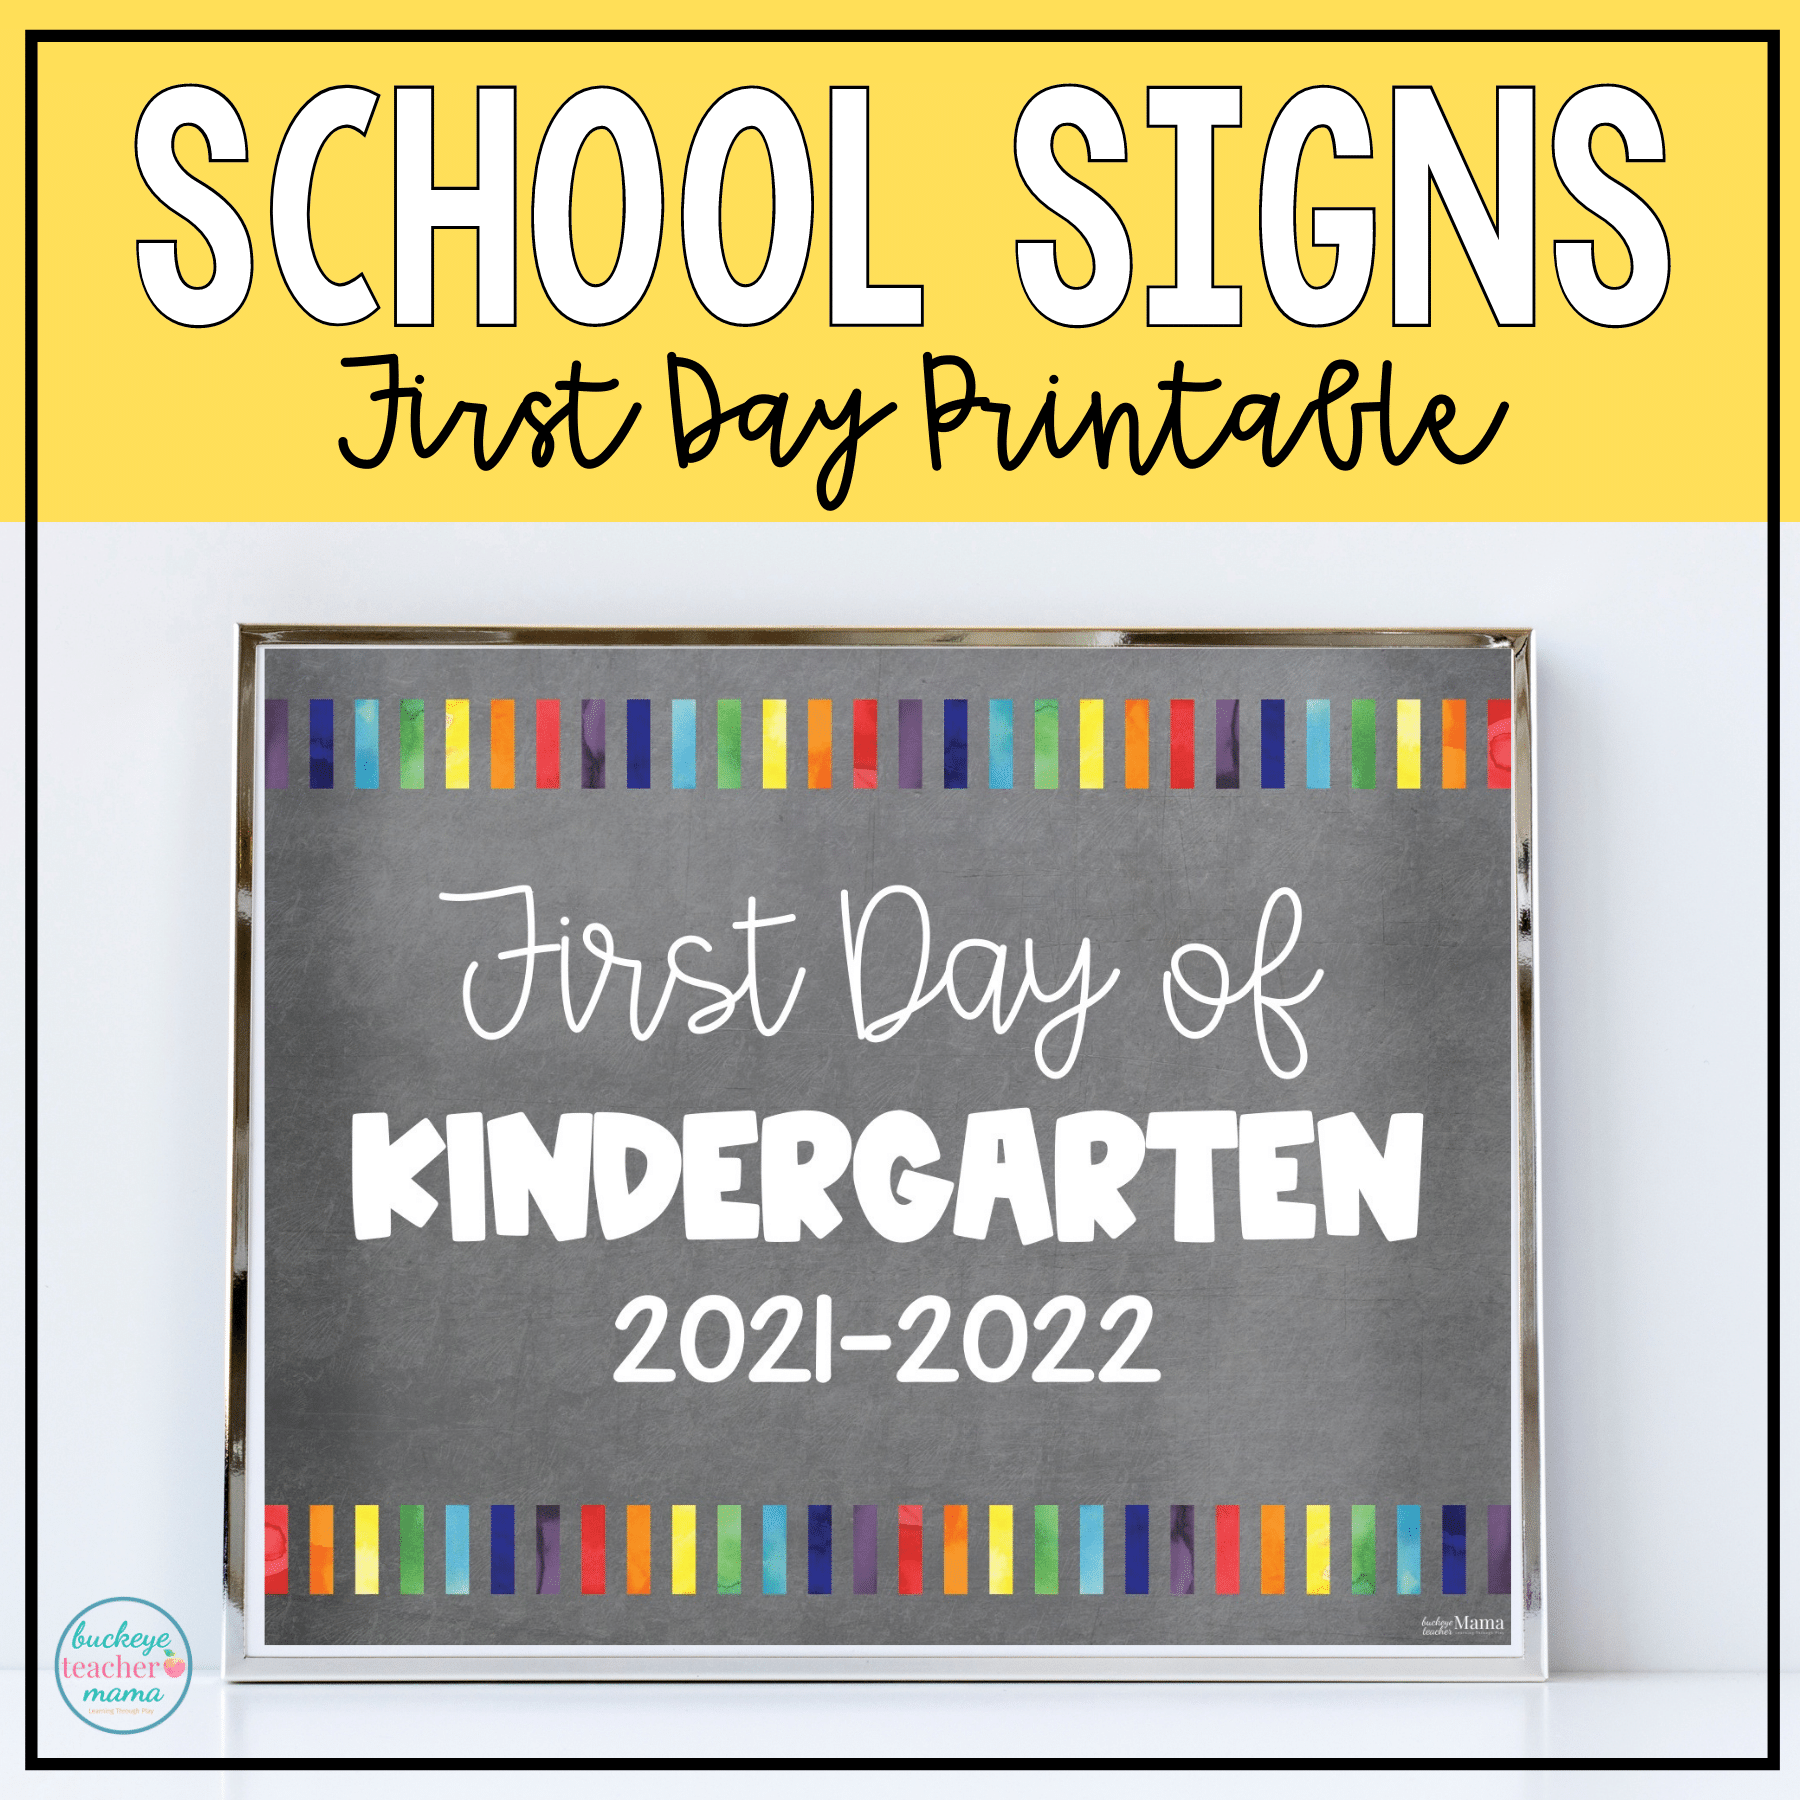 Editable and Printable Back to School Signs for Kids Buckeye Teacher Mama